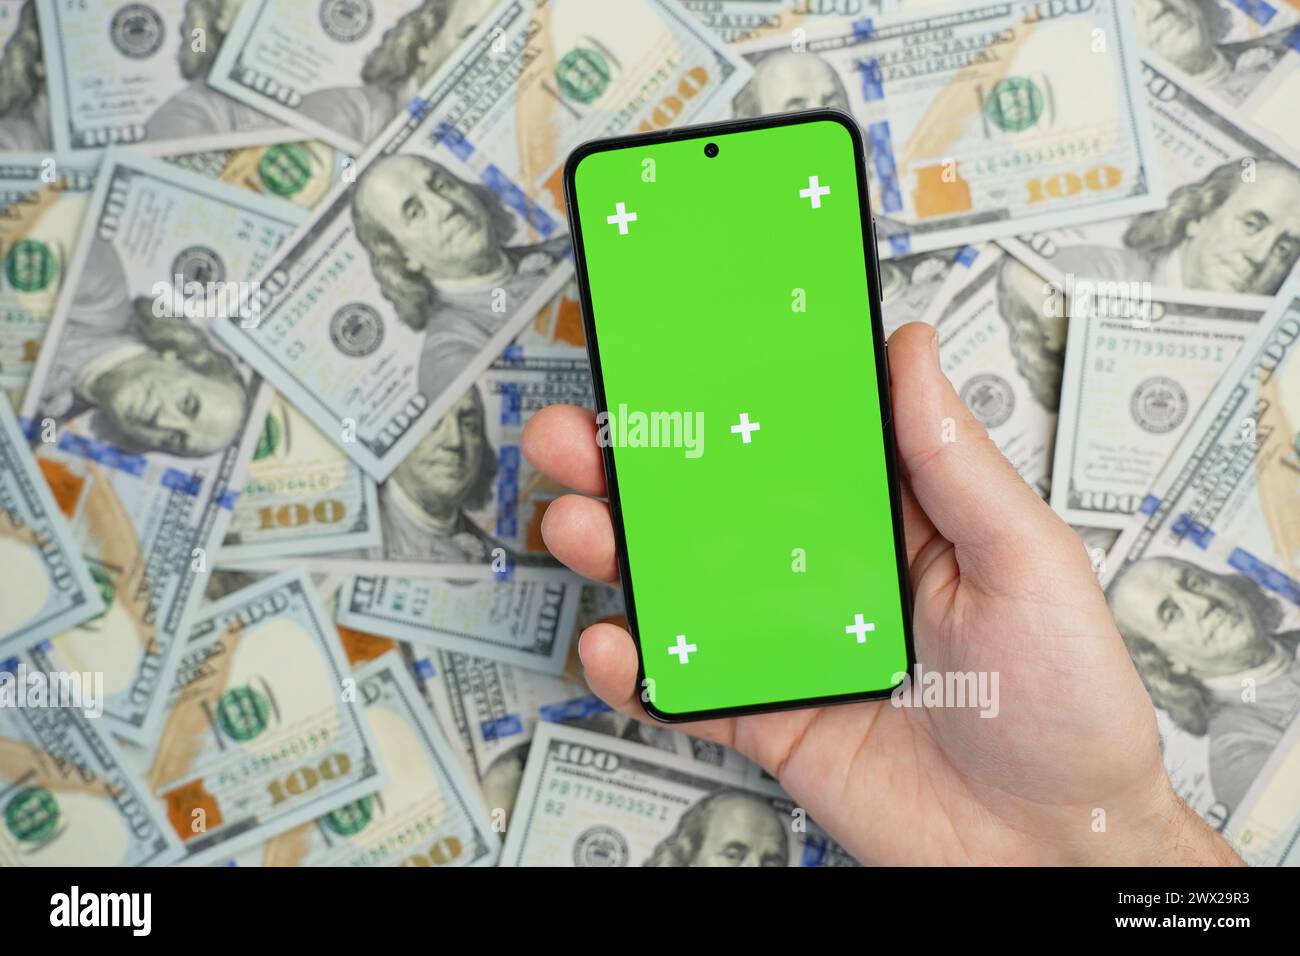 Main tenant smartphone avec écran vert sur pile de billets de dollars, vue de dessus. Concept de gains en ligne Banque D'Images